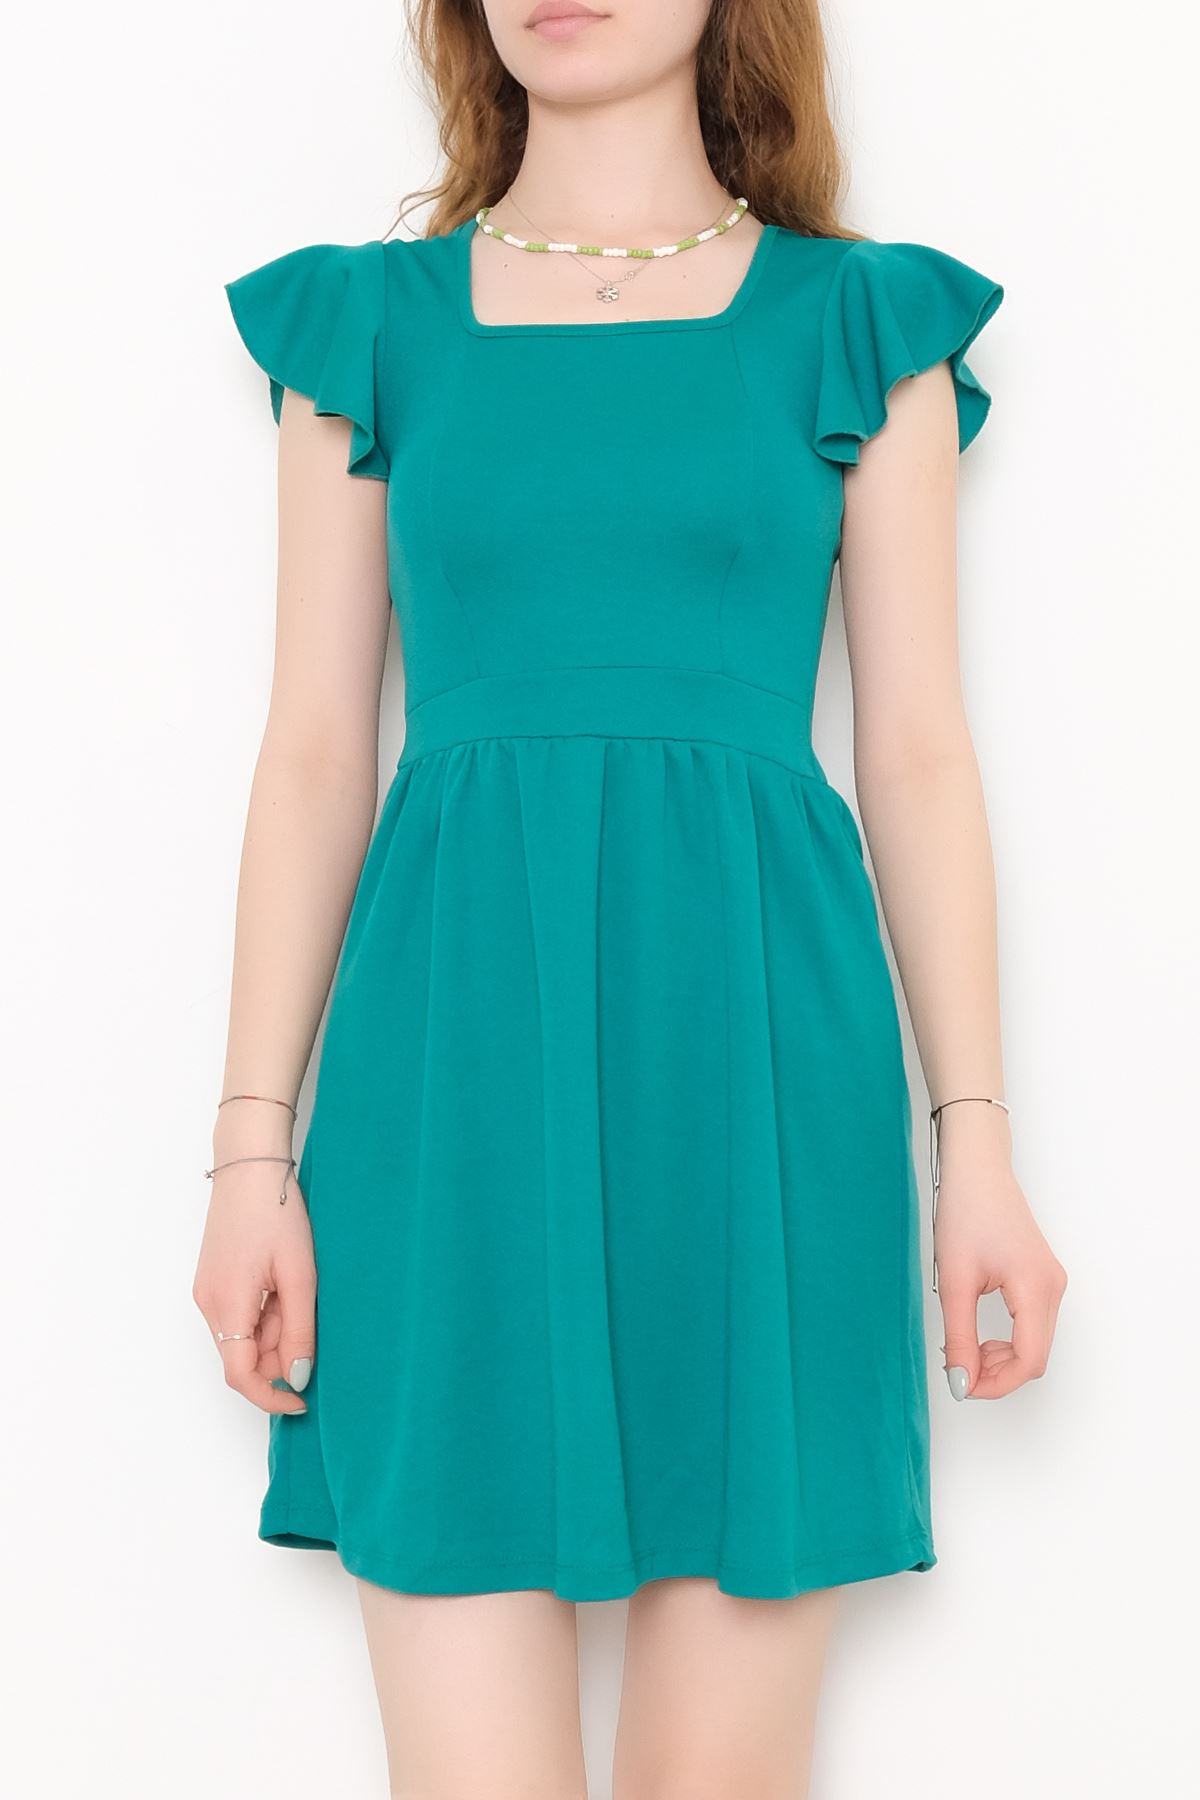 Kol Fırfırlı Elbise Yeşil - 10684.631.